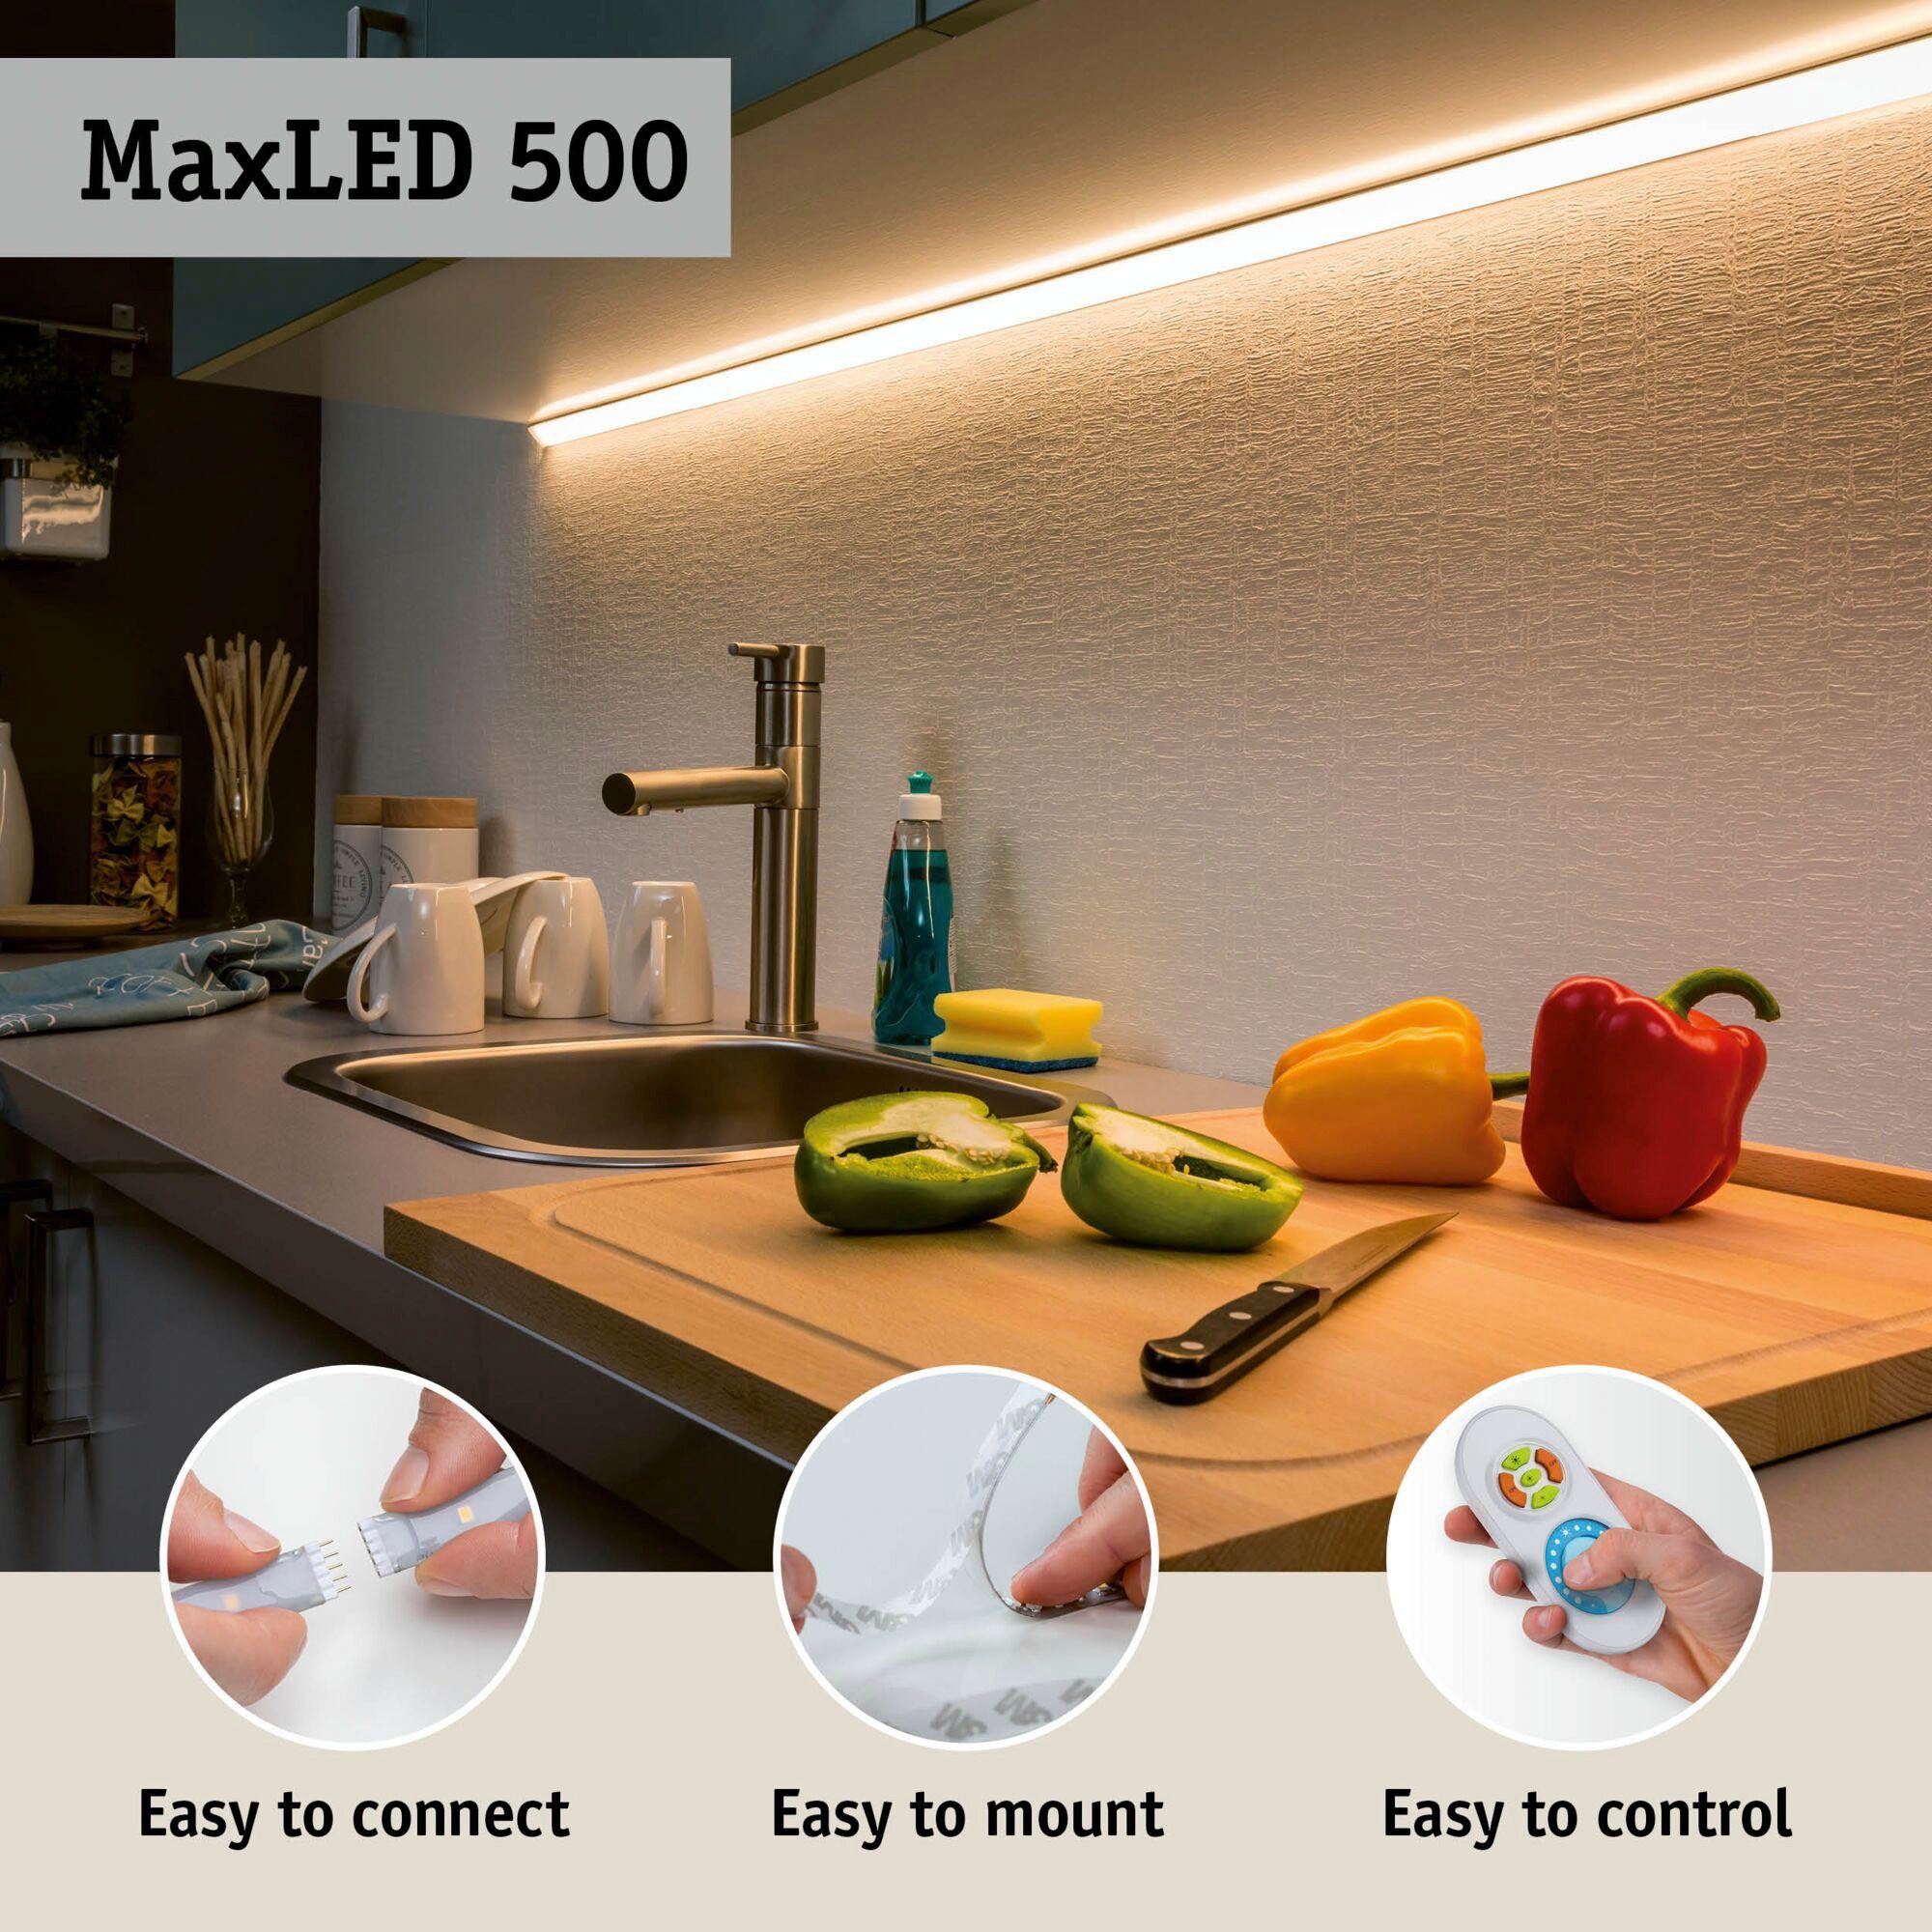 Paulmann LED-Streifen MaxLED 1-flammig IP44 825lm 500 beschichtet, Basisset 8,5W Tageslichtweiß 1,5m